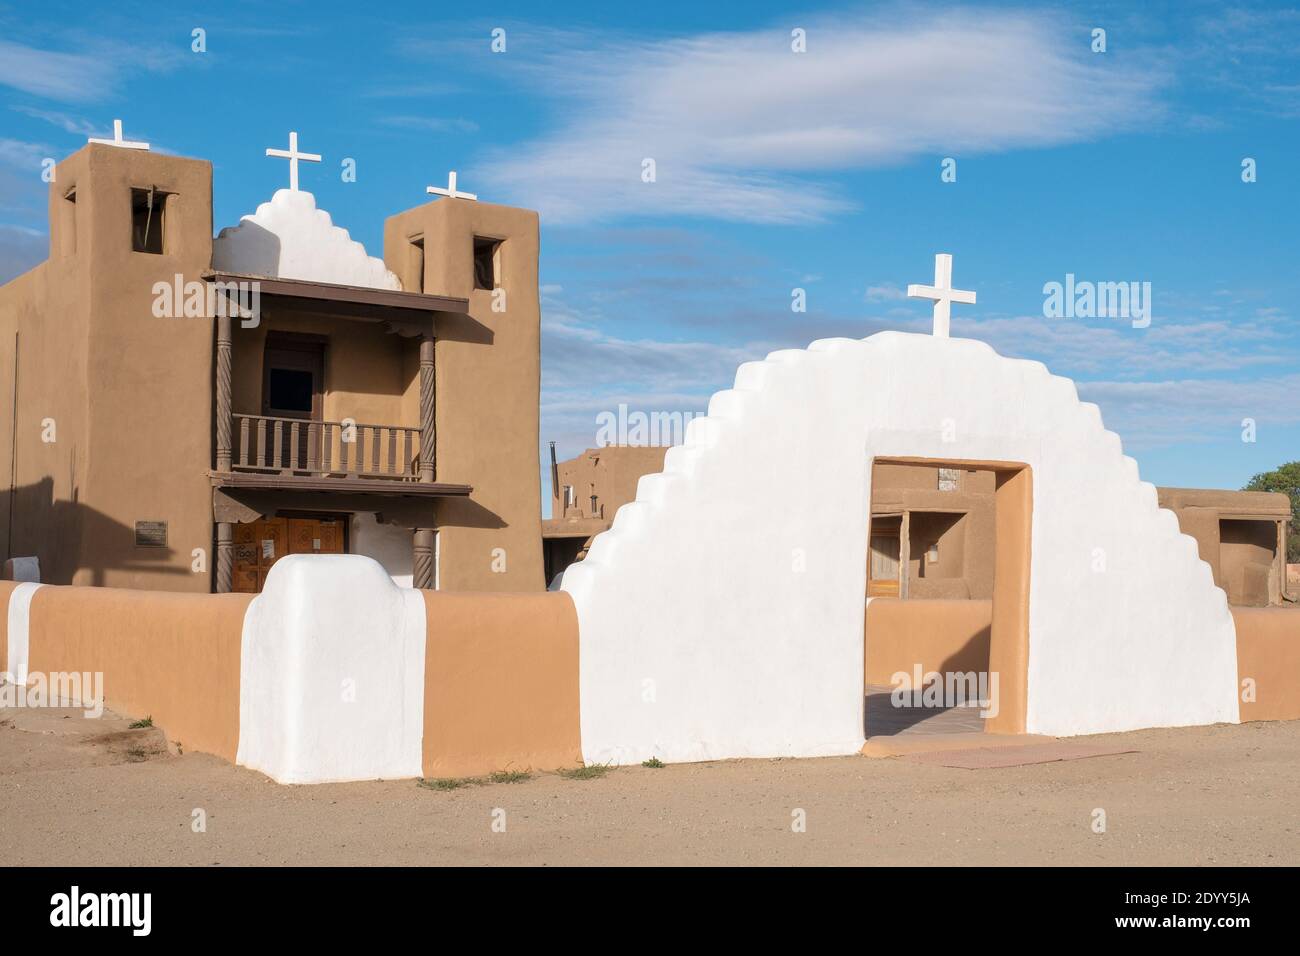 Église Saint-Jérôme ou San Geronimo dans le village historique d'adobe amérindien de Taos Pueblo, Nouveau-Mexique, États-Unis. Un site classé au patrimoine mondial de l'UNESCO. Banque D'Images